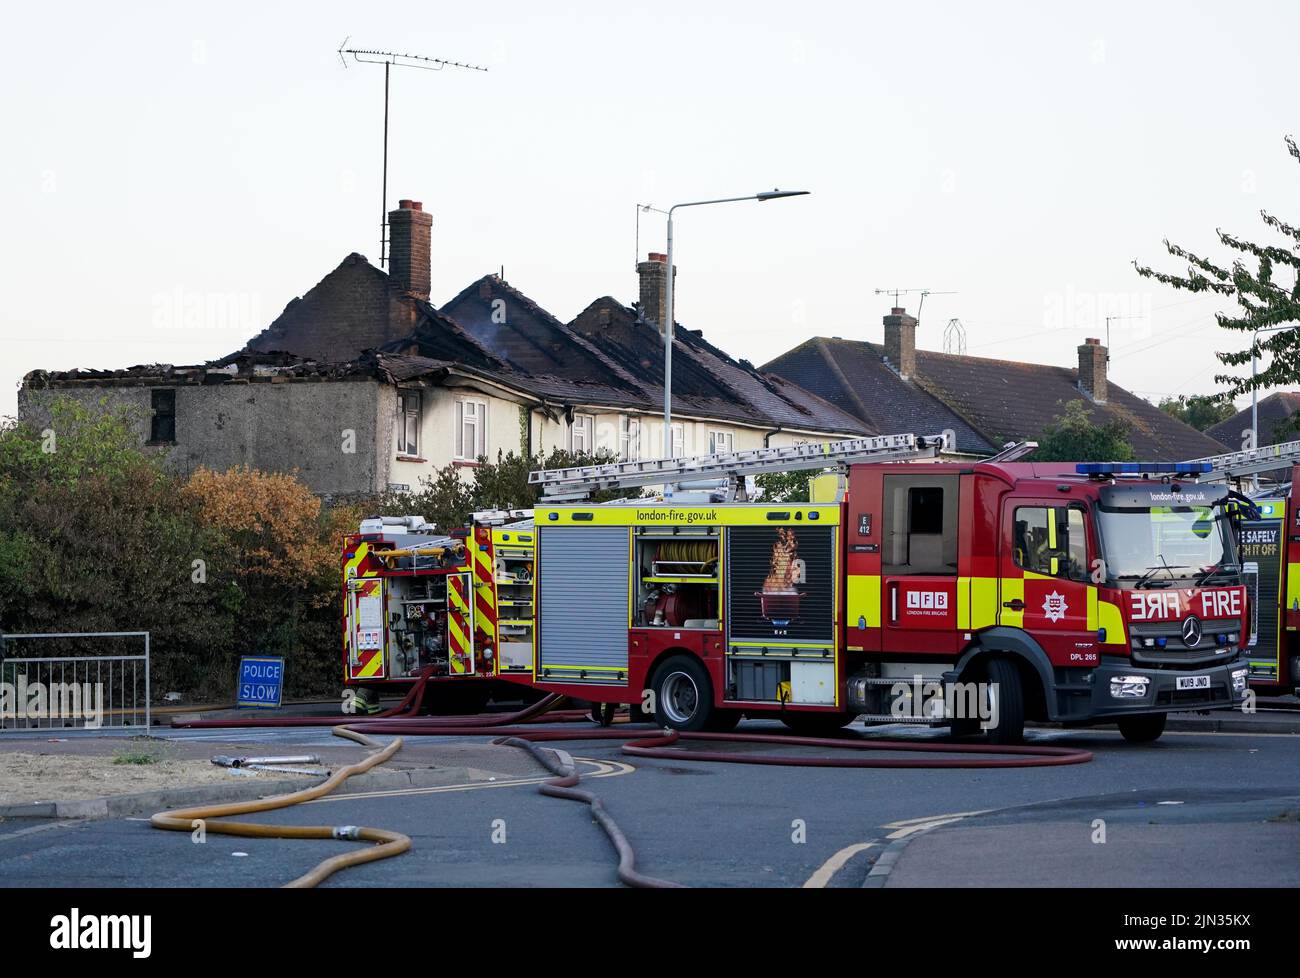 Servicios de emergencia en la escena en Crayford Way, Crayford, al sureste de Londres, donde los bomberos han estado enfrentando un incendio que rasgó a través de cuatro casas adosadas Fecha de la foto: Lunes 8 de agosto de 2022. Foto de stock